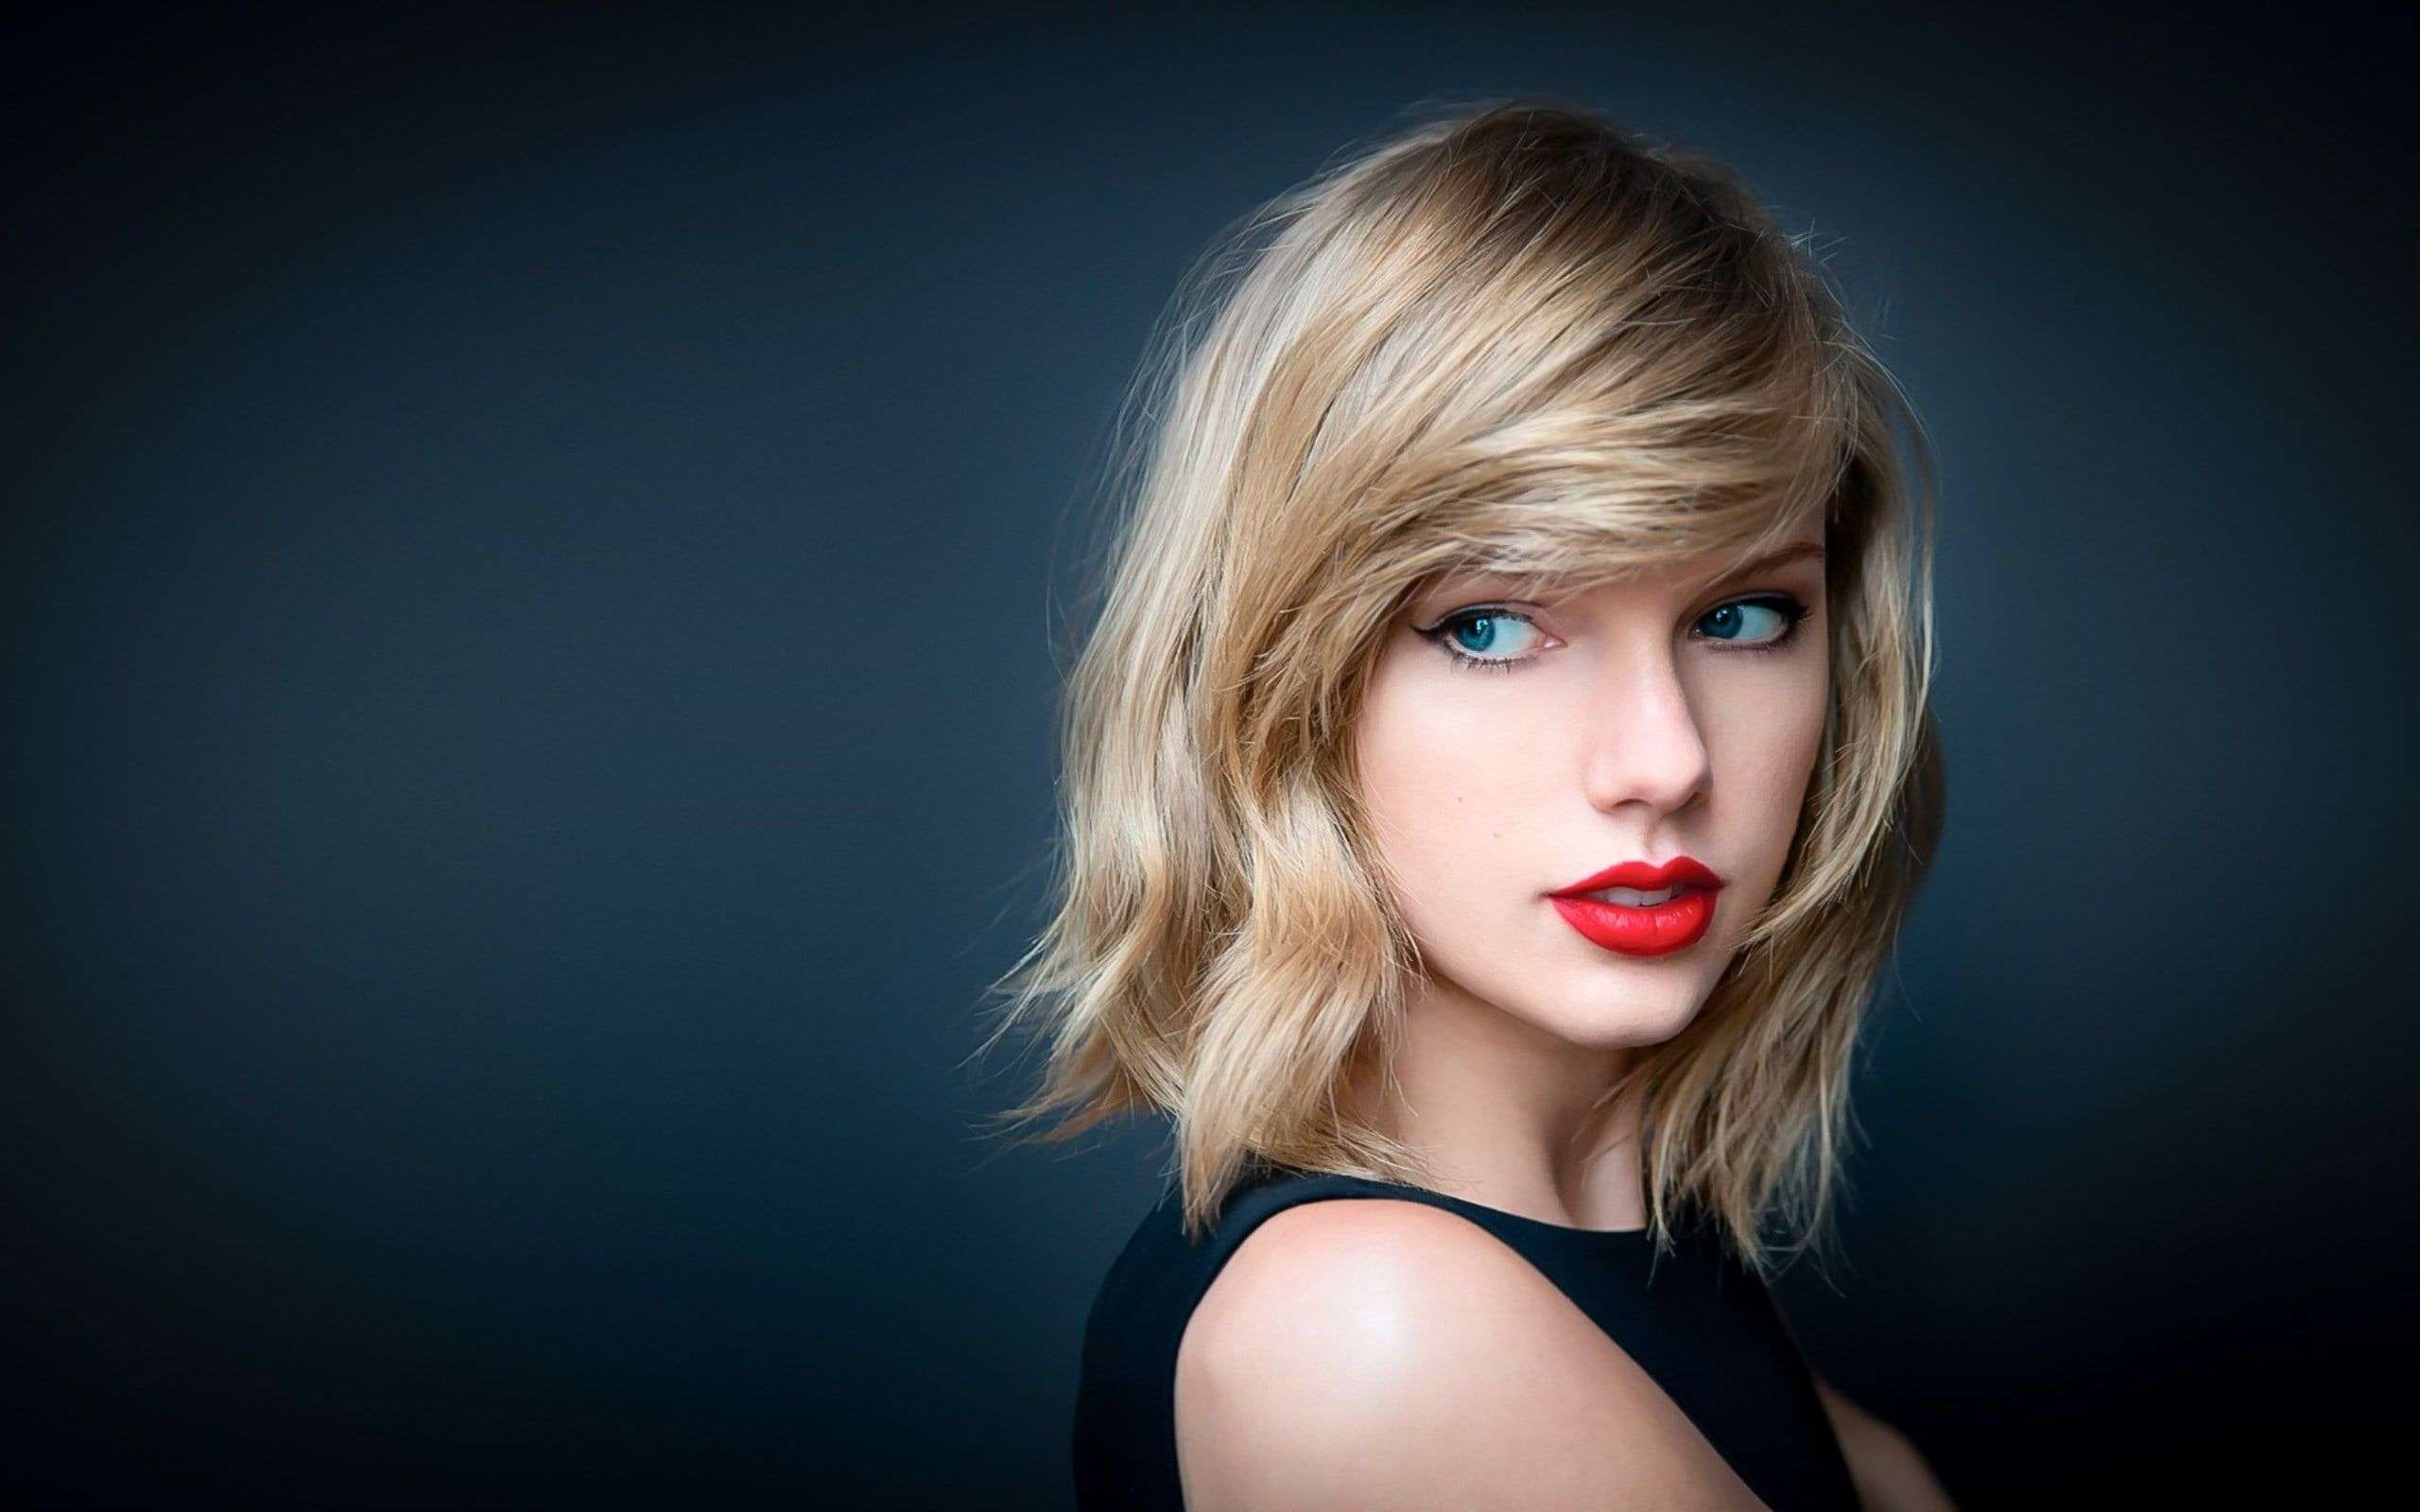 Wallpaper HD Desktop Taylor Swift